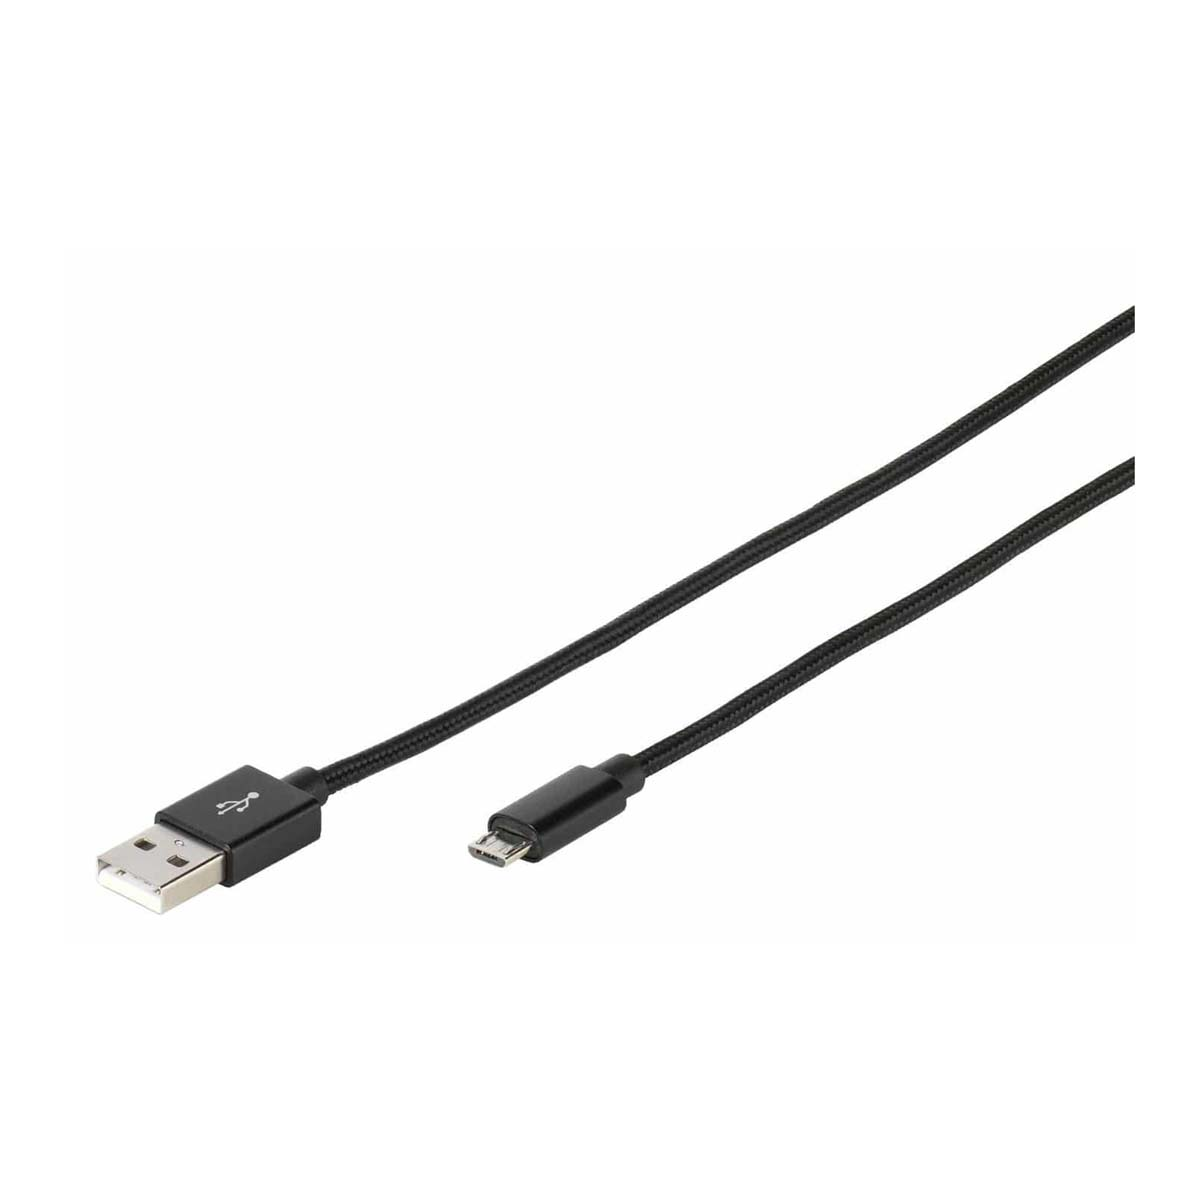 VIVANCO 37544 Kabel Micro USB